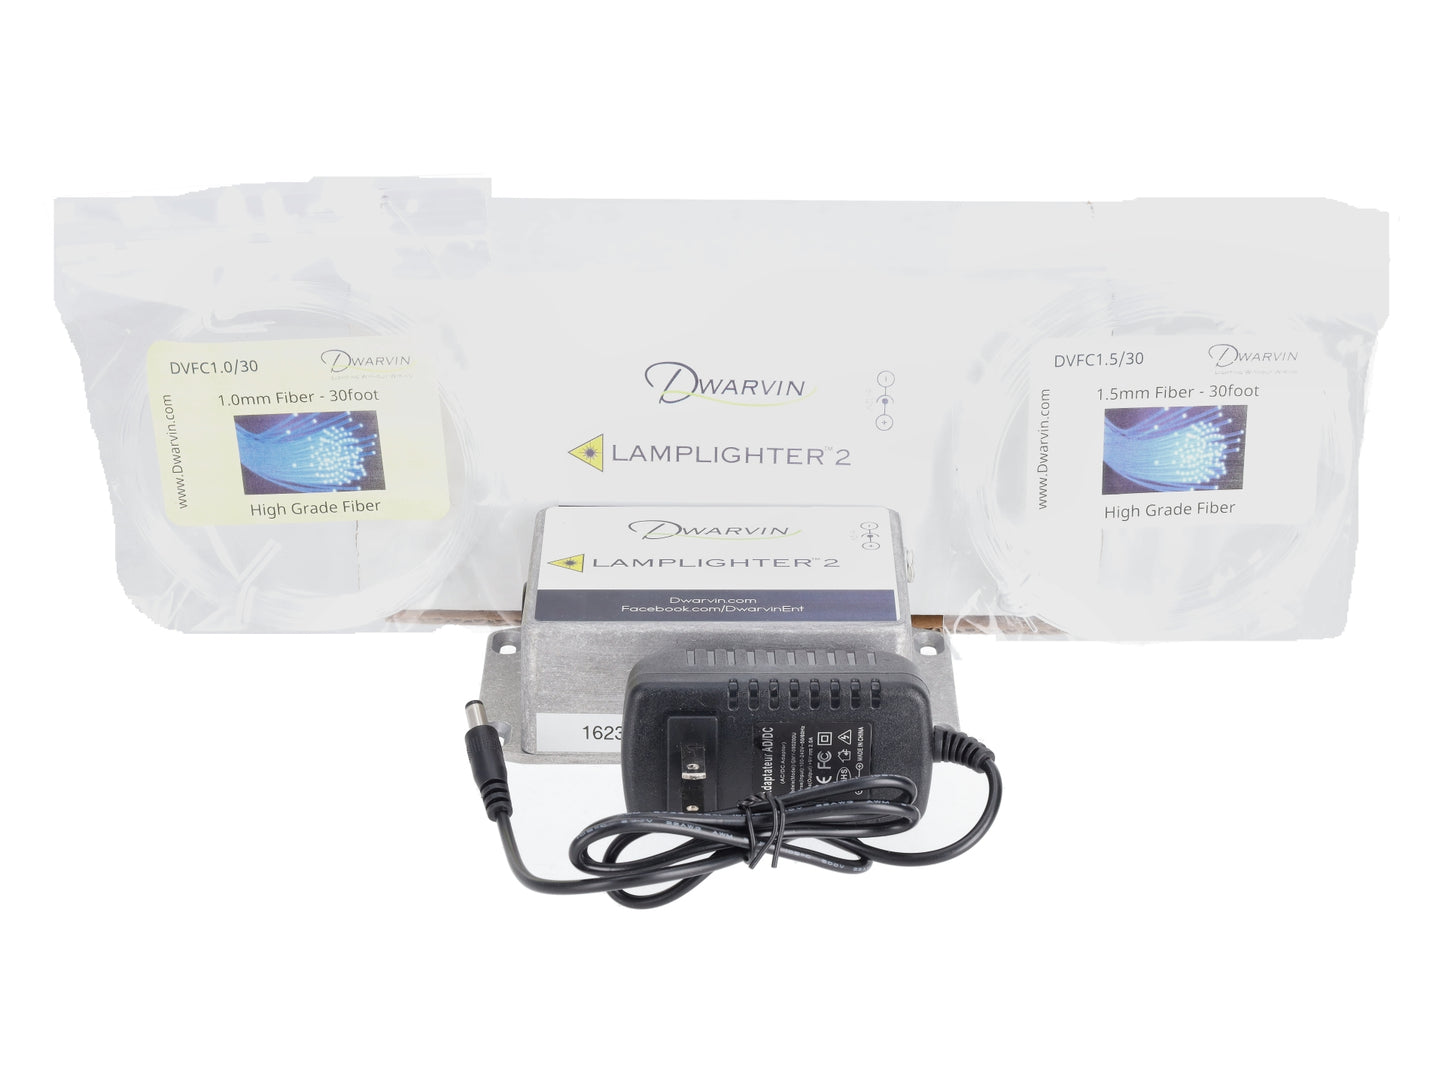 Dwarvin DVSK203 Lamplighter 2 Starter Kit with 1.5mm & 1.0mm Fiber Mix Pack